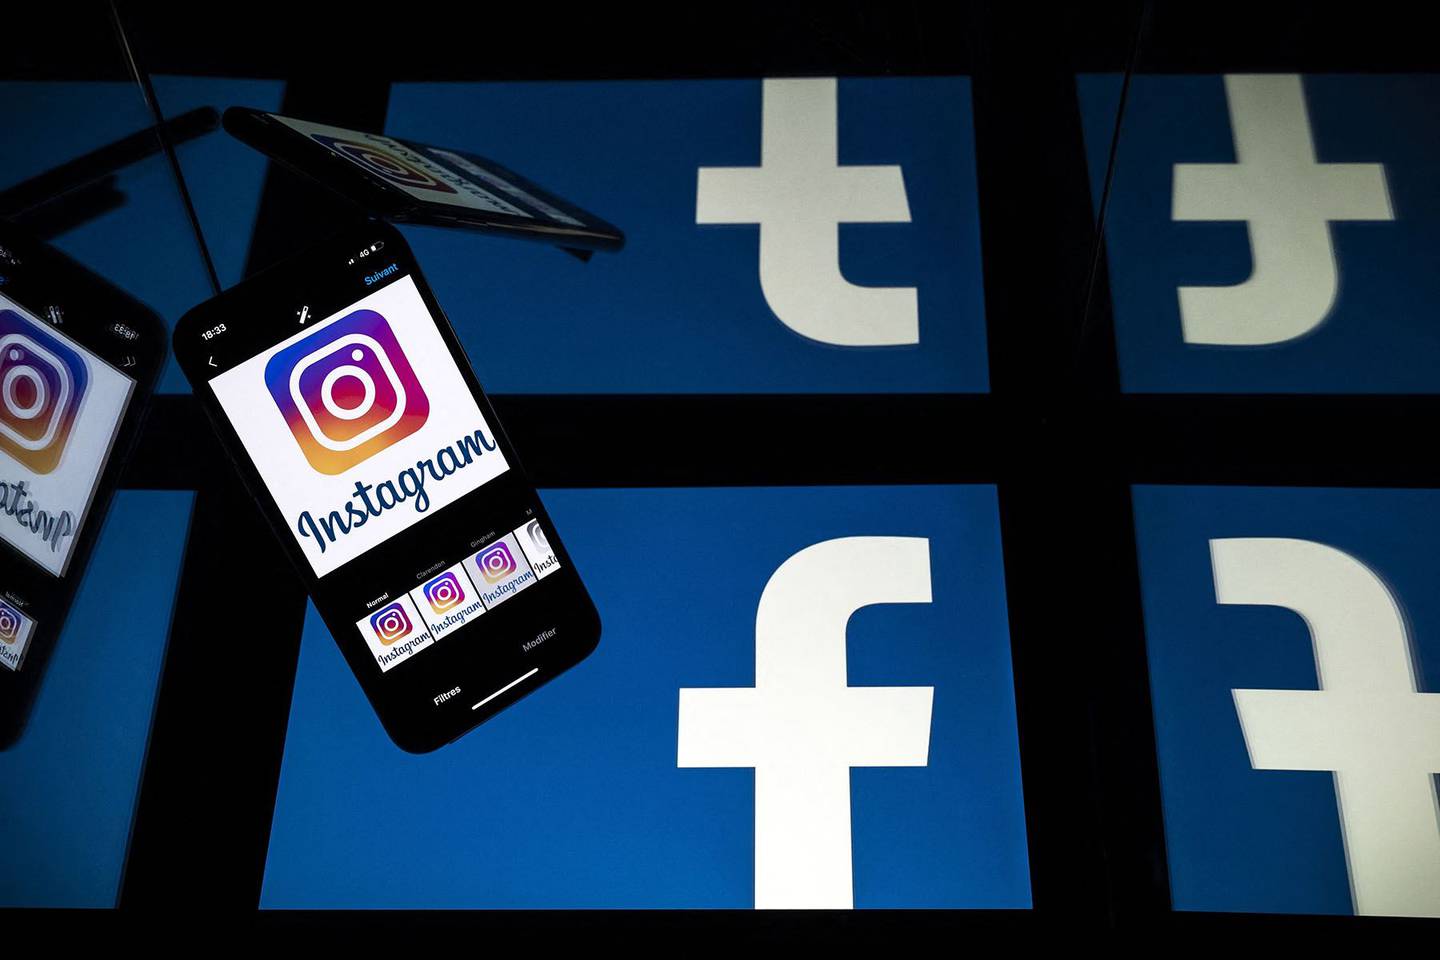 Logos de Facebook e Instagram